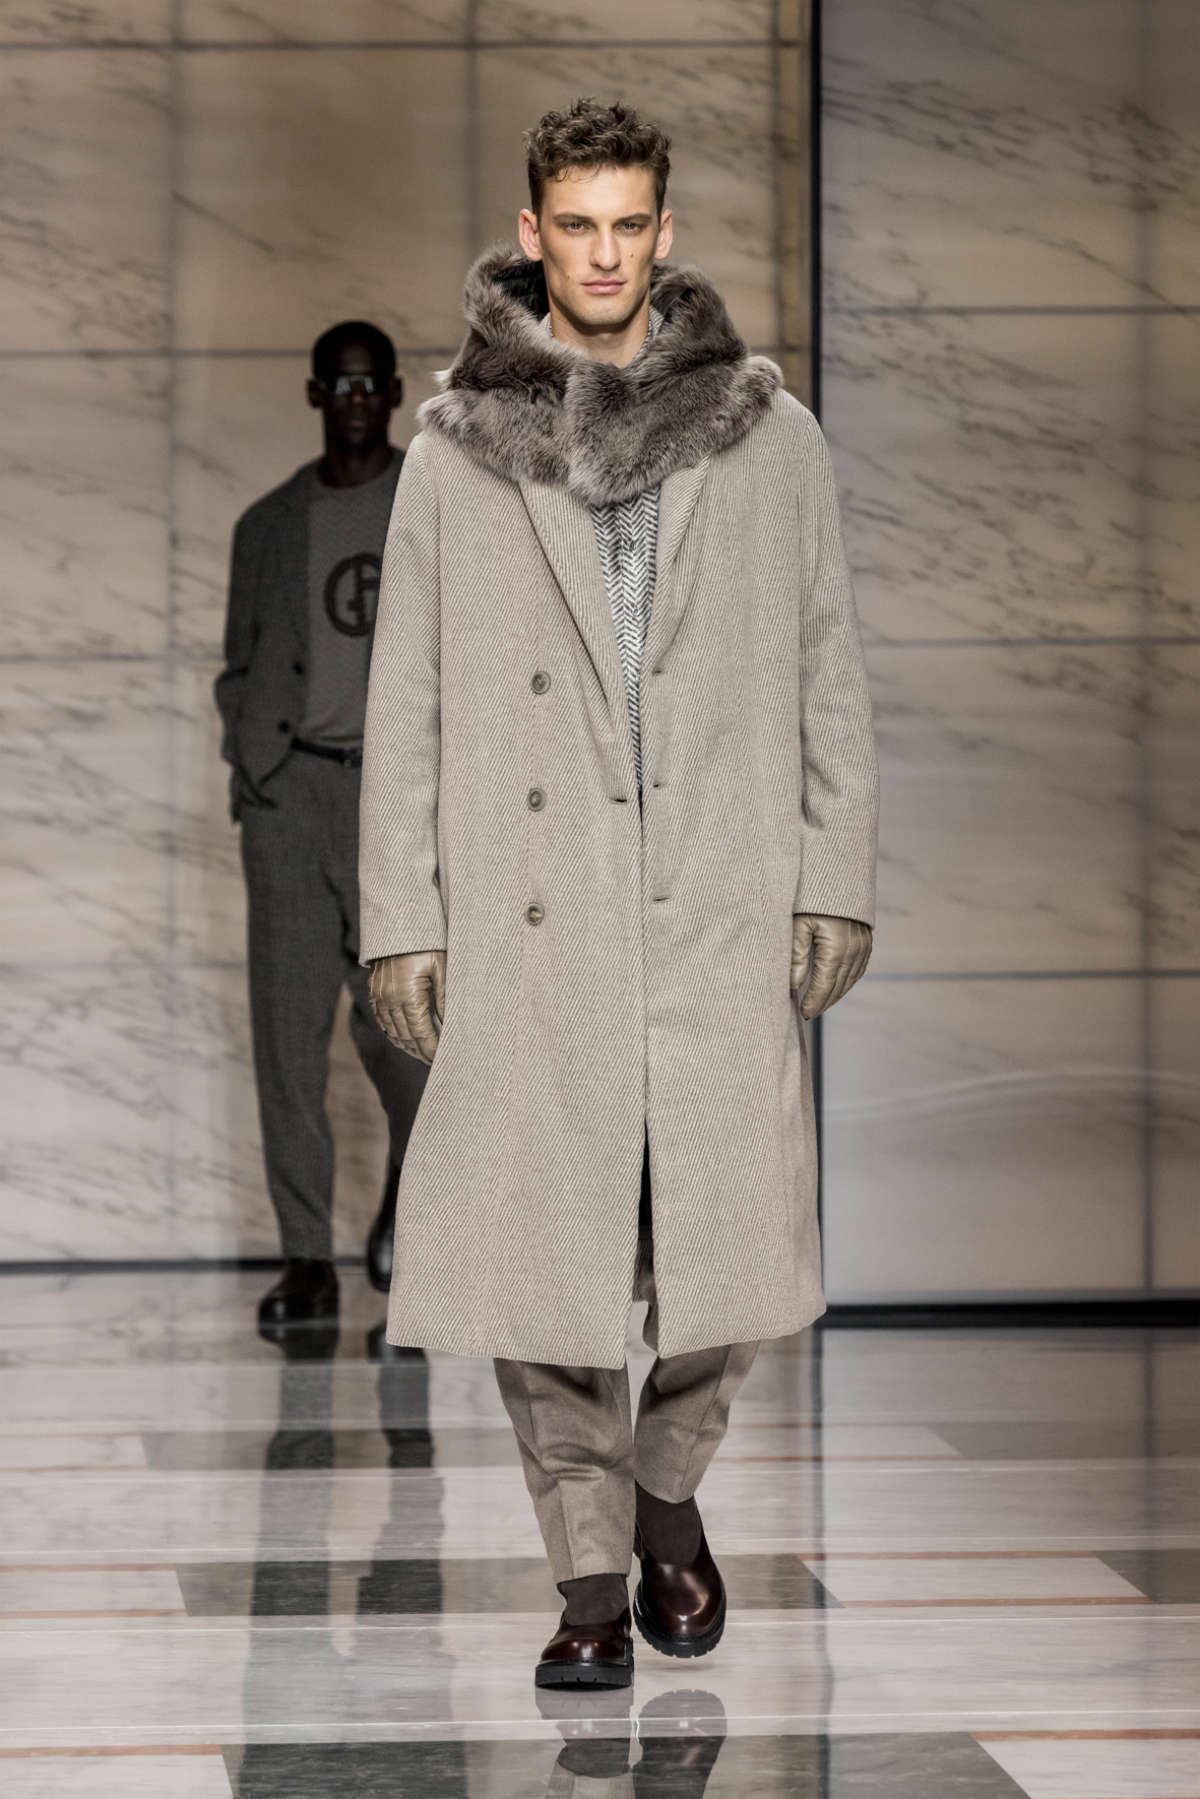 Giorgio Armani Presents His New Men’s Collection Autumn/Winter 2023/24